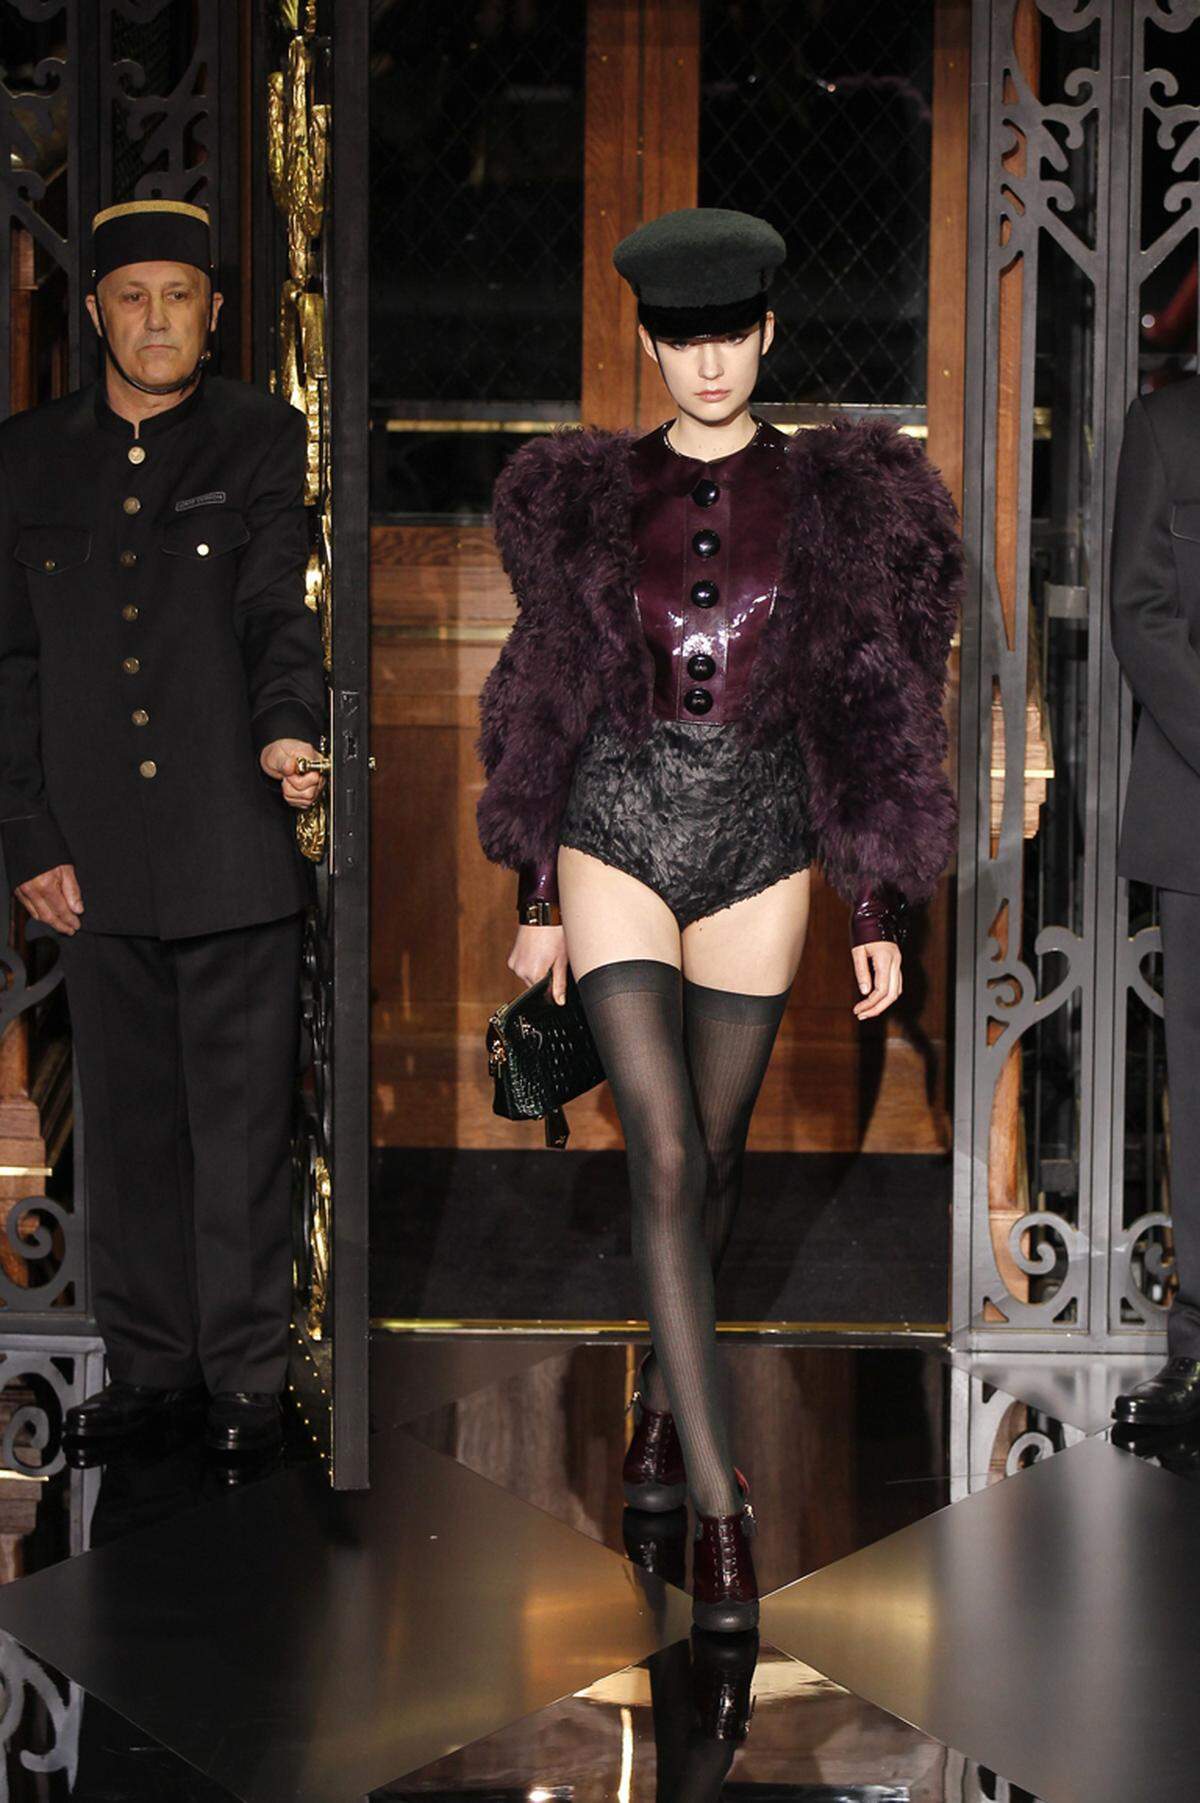 Das war Louis Vuitton FW 11/12: Marc Jacobs zeigte sich sichtlich von der Fetisch Szene inspiriert. Leder trifft auf Plastik, dieses auf die nakte Brust, die Zofe trifft auf die strenge Uniformierte in Strapsen und Kate Moss defiliert rauchend im Mieder.